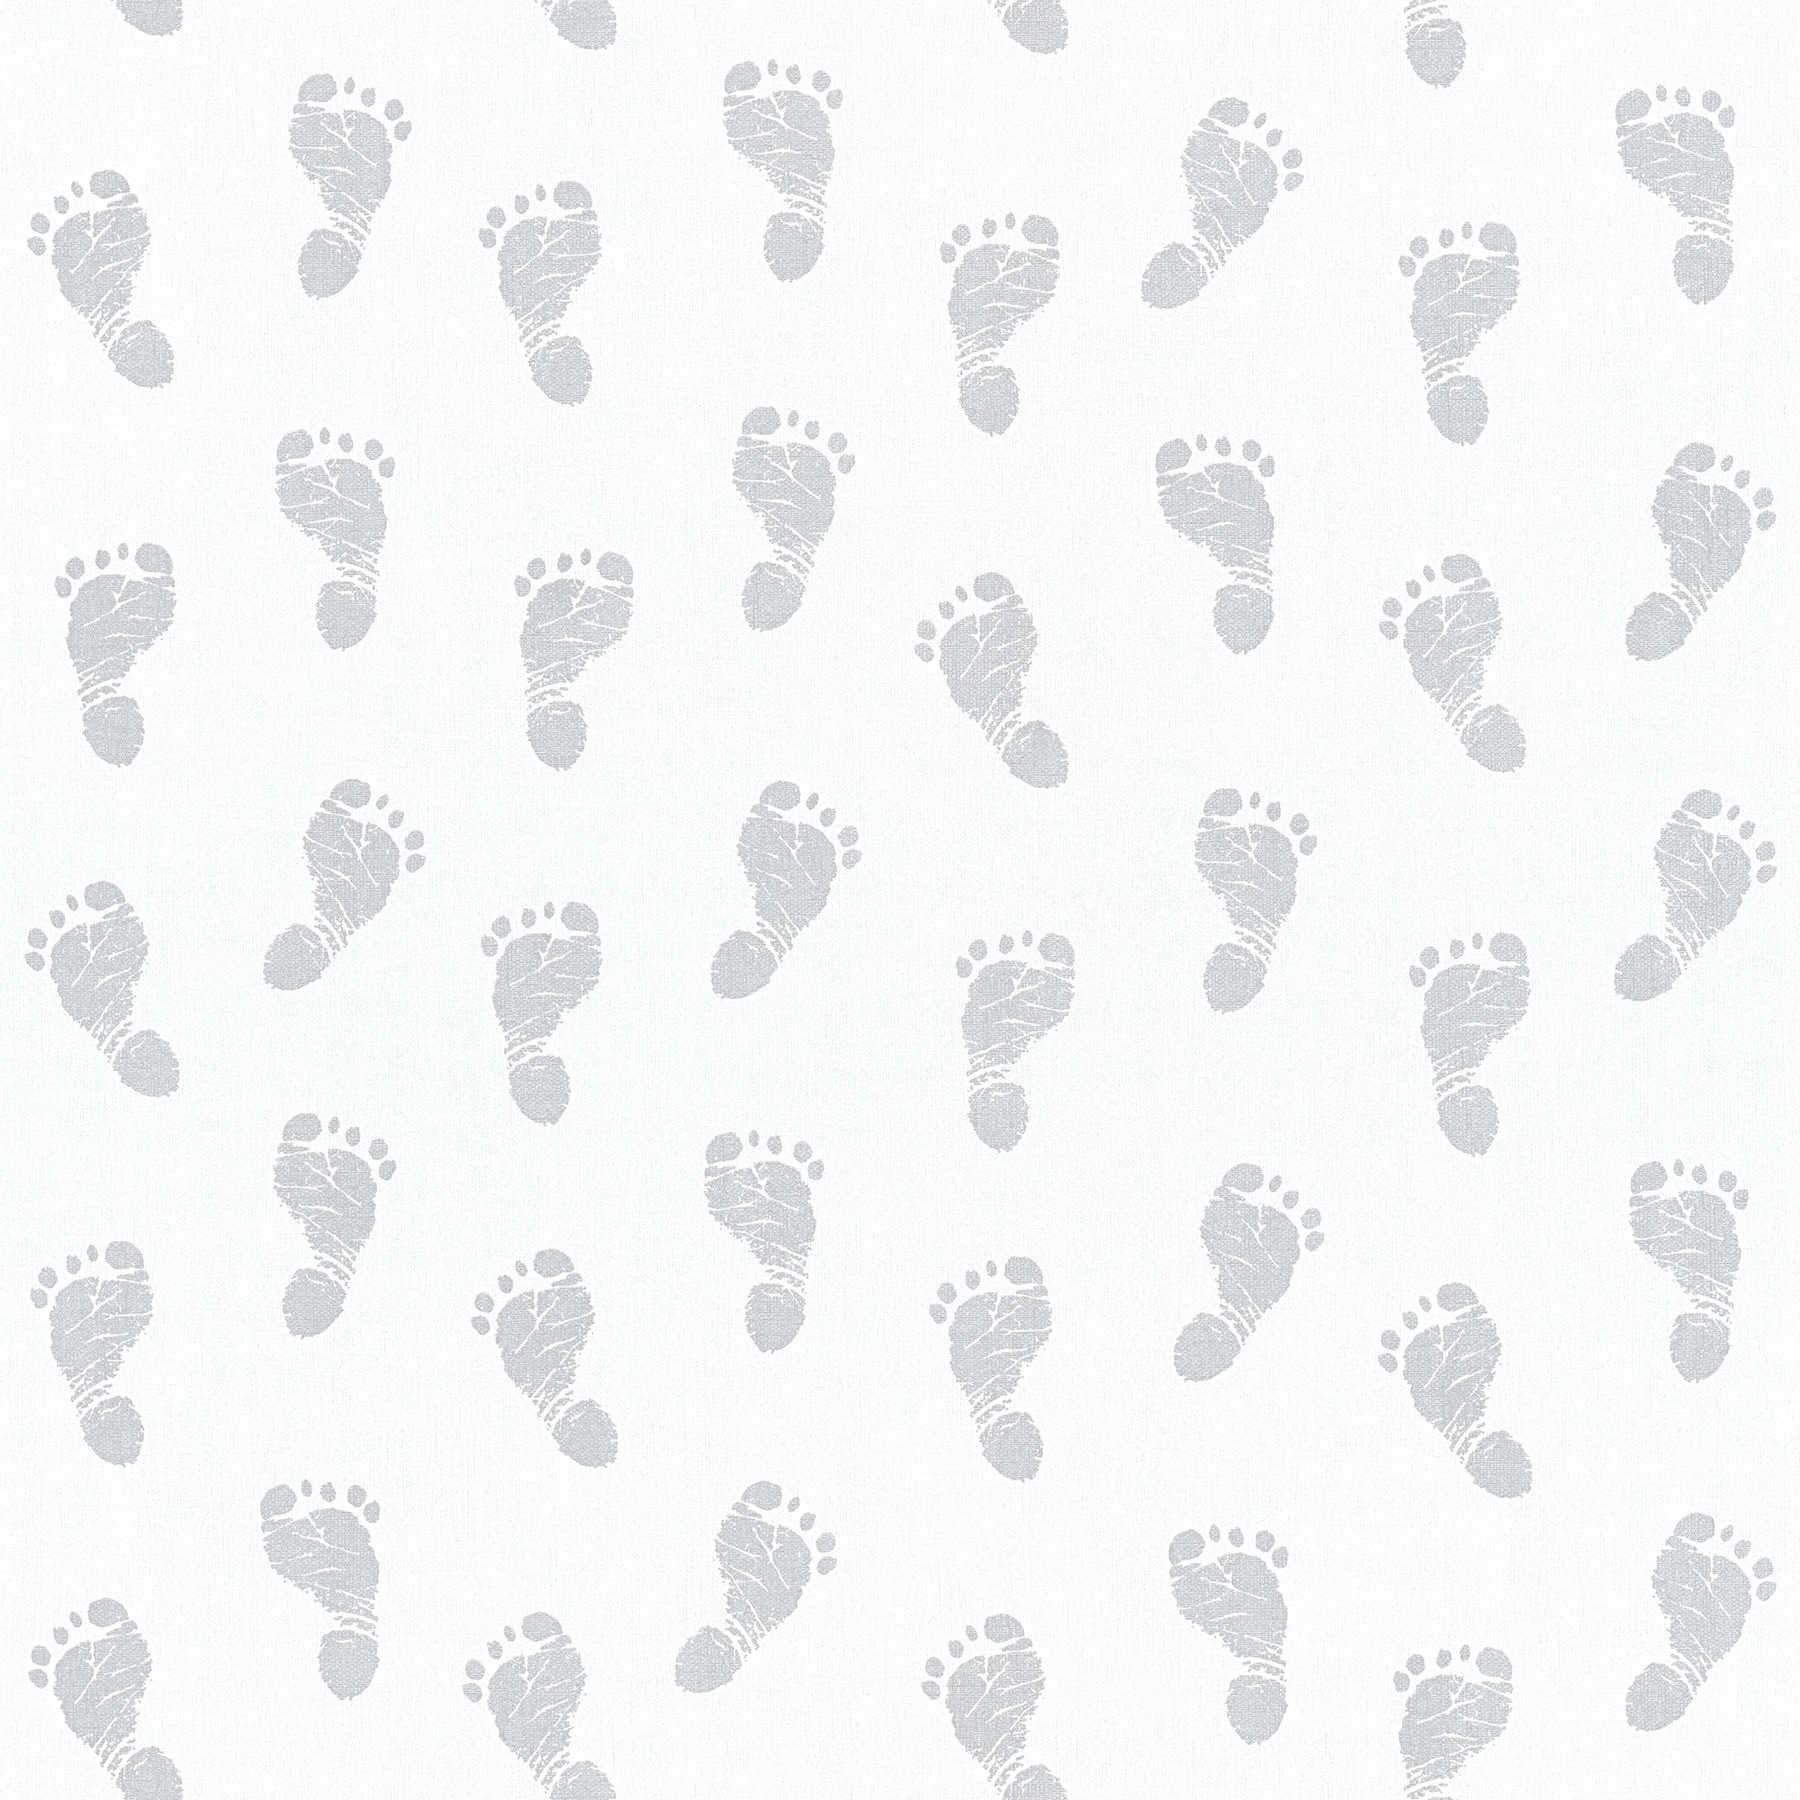 Baby behang met voetjes patroon - metallic, wit
